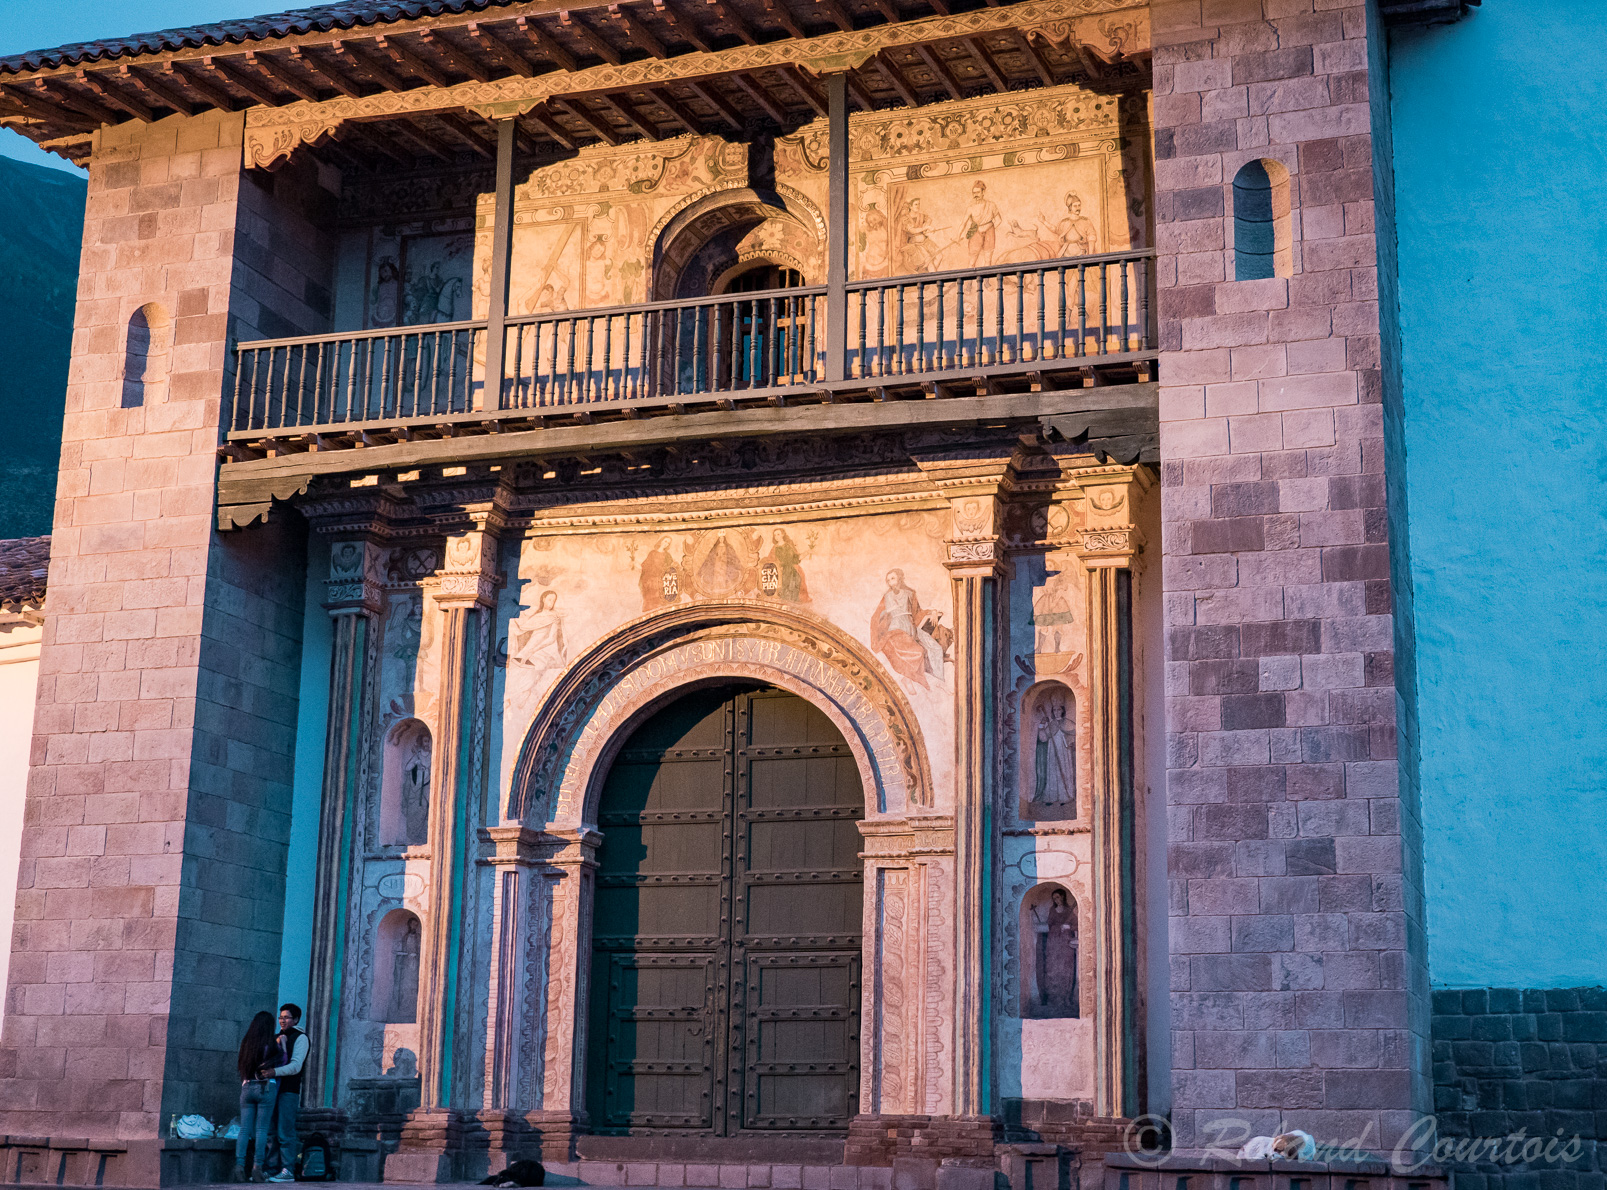 Halte au petit village d'Andahuaylillas pour voir sa ravissante église appelée la « chapelle Sixtine des Amériques » pour la richesse de sa décoration. L'extérieur appartient au style renaissance.